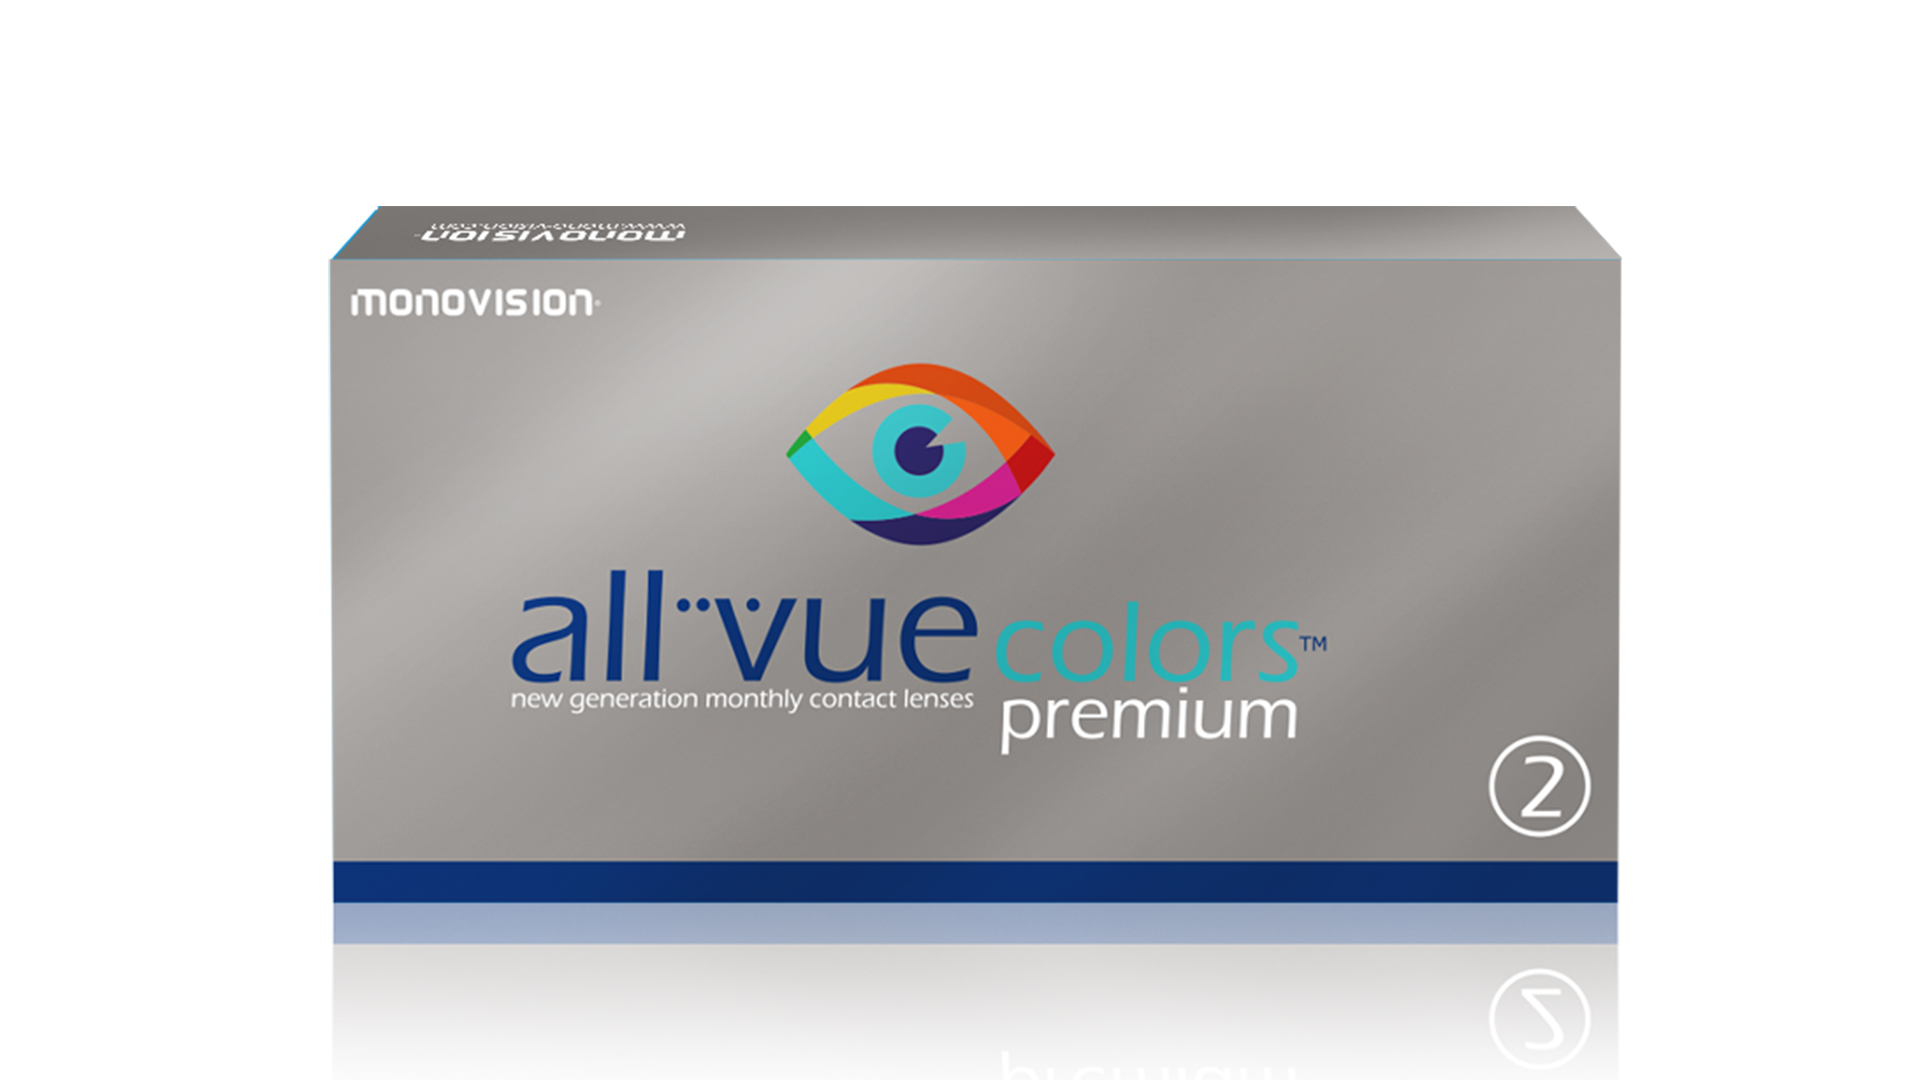 All Vue Colors™ Premium